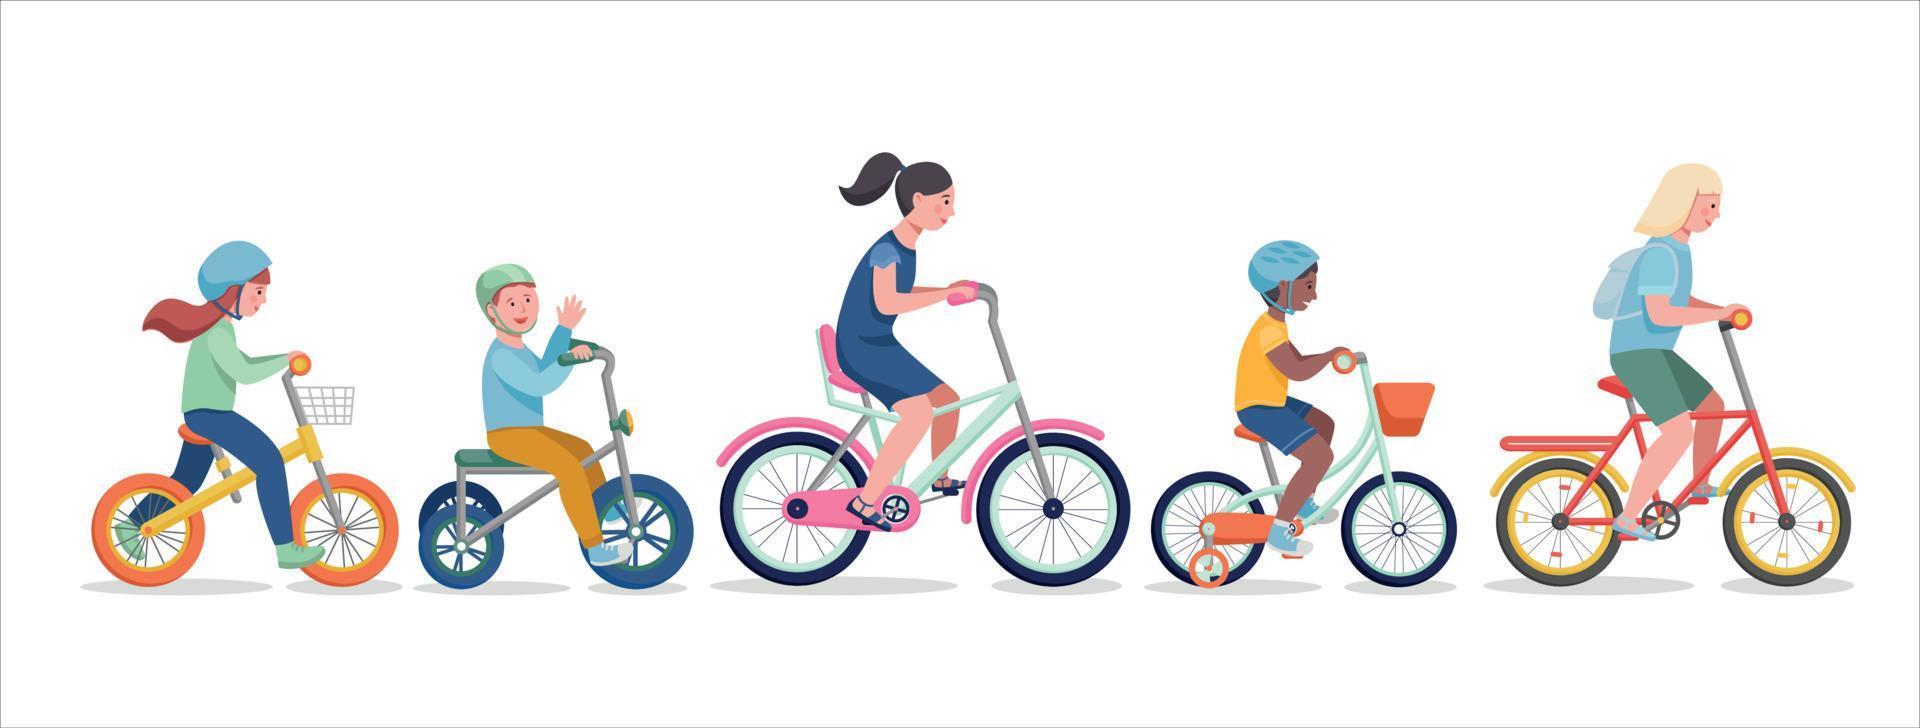 niños andando en bicicleta. ilustración de un grupo de niños en bicicleta vector